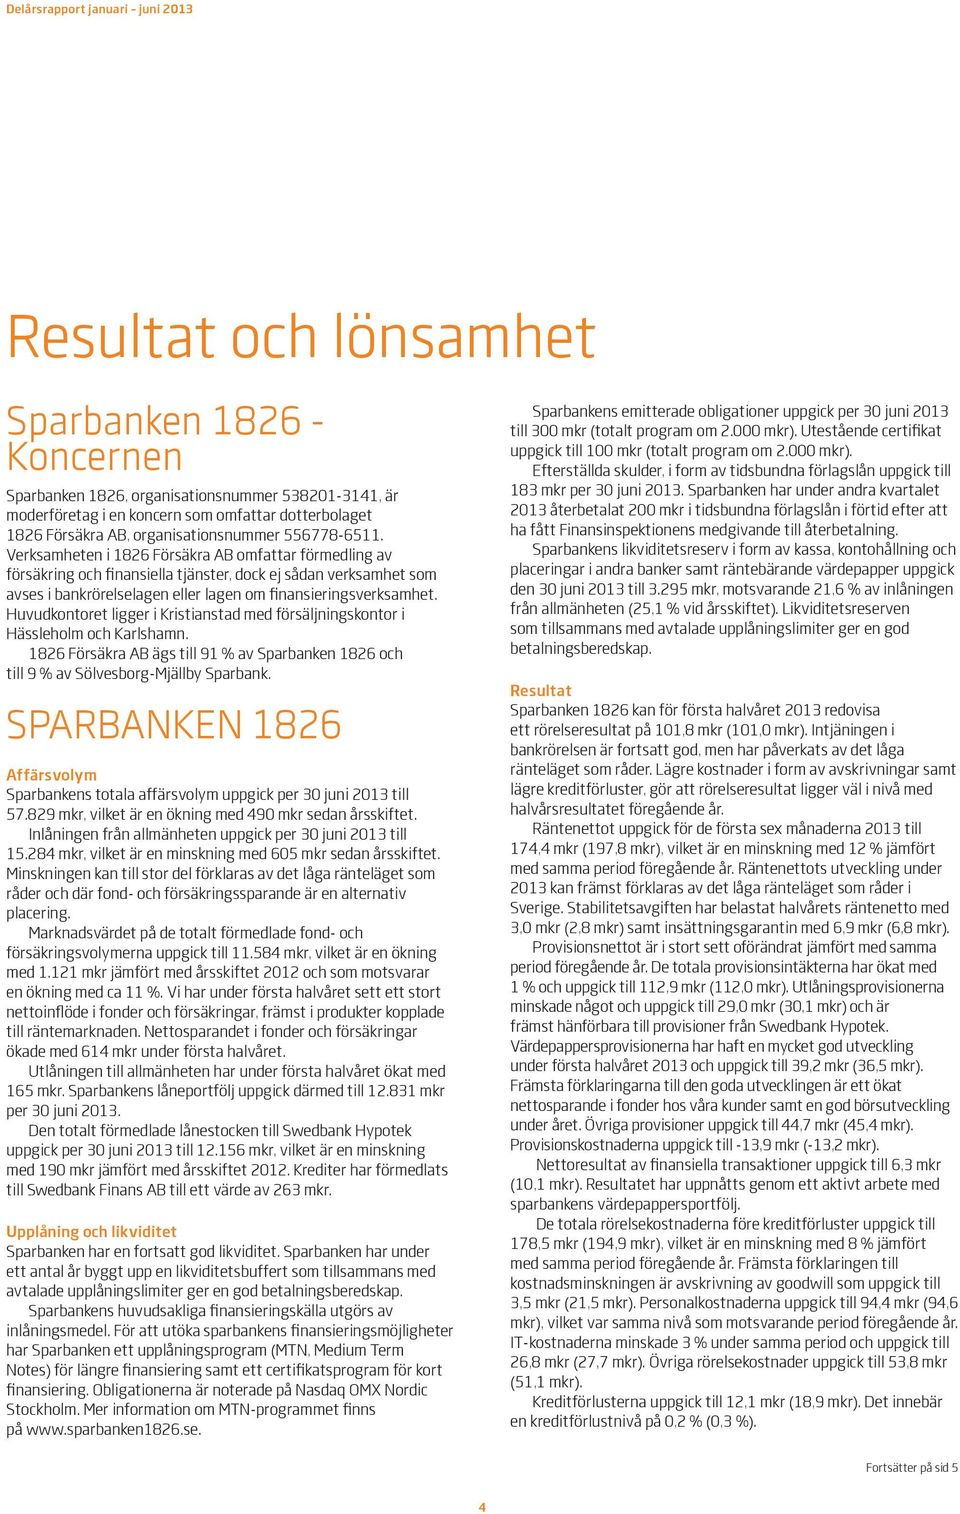 Huvudkontoret ligger i Kristianstad med försäljningskontor i Hässleholm och Karlshamn. 1826 Försäkra AB ägs till 91 % av och till 9 % av Sölvesborg-Mjällby Sparbank.